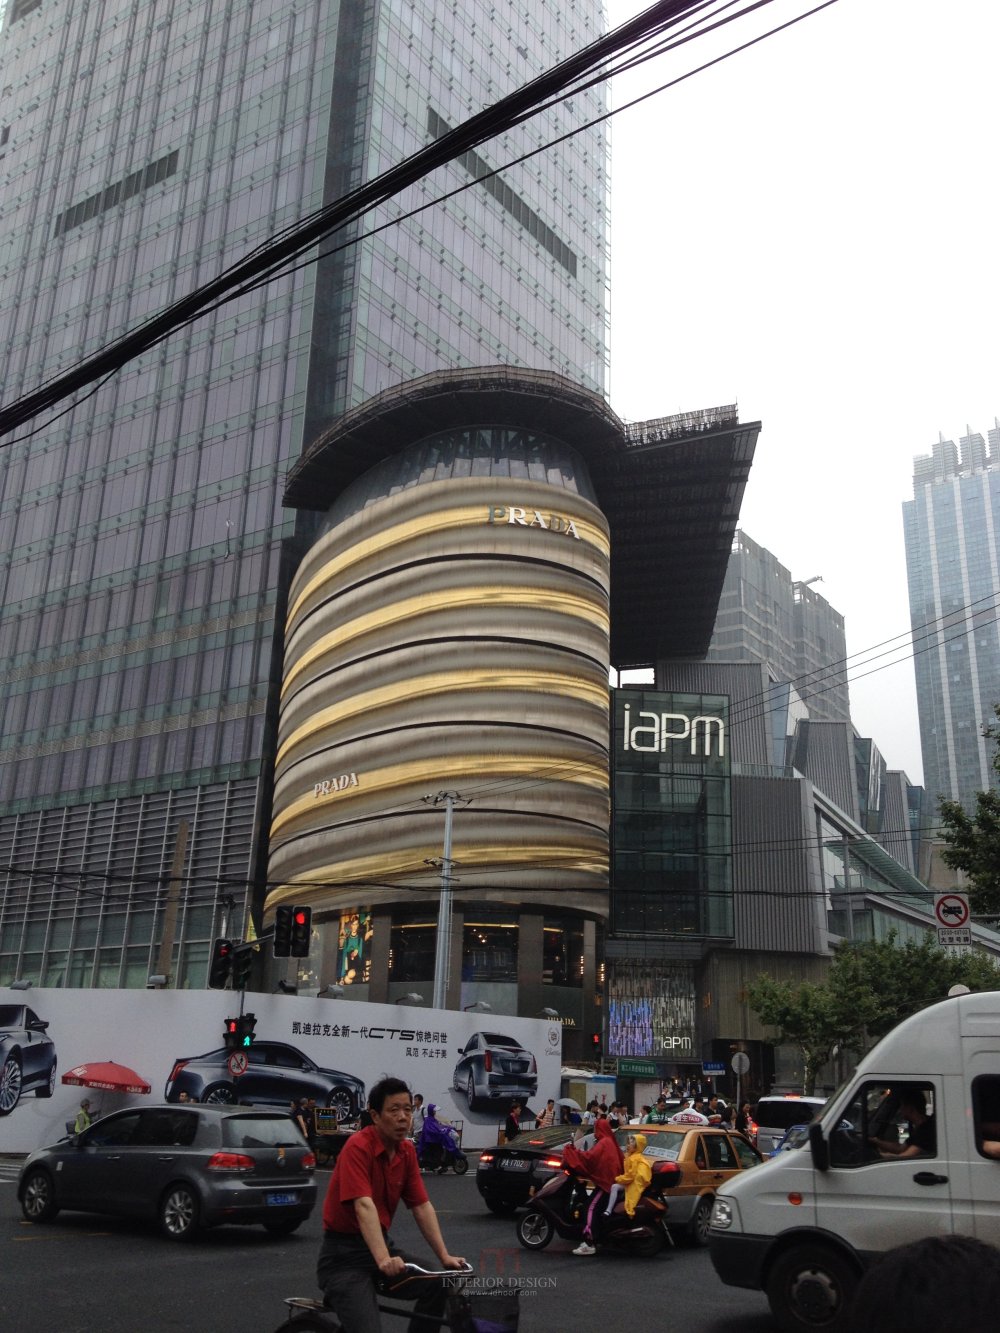 上海环贸Iapm购物商场---内部及细节自拍图_IMG_2583.JPG